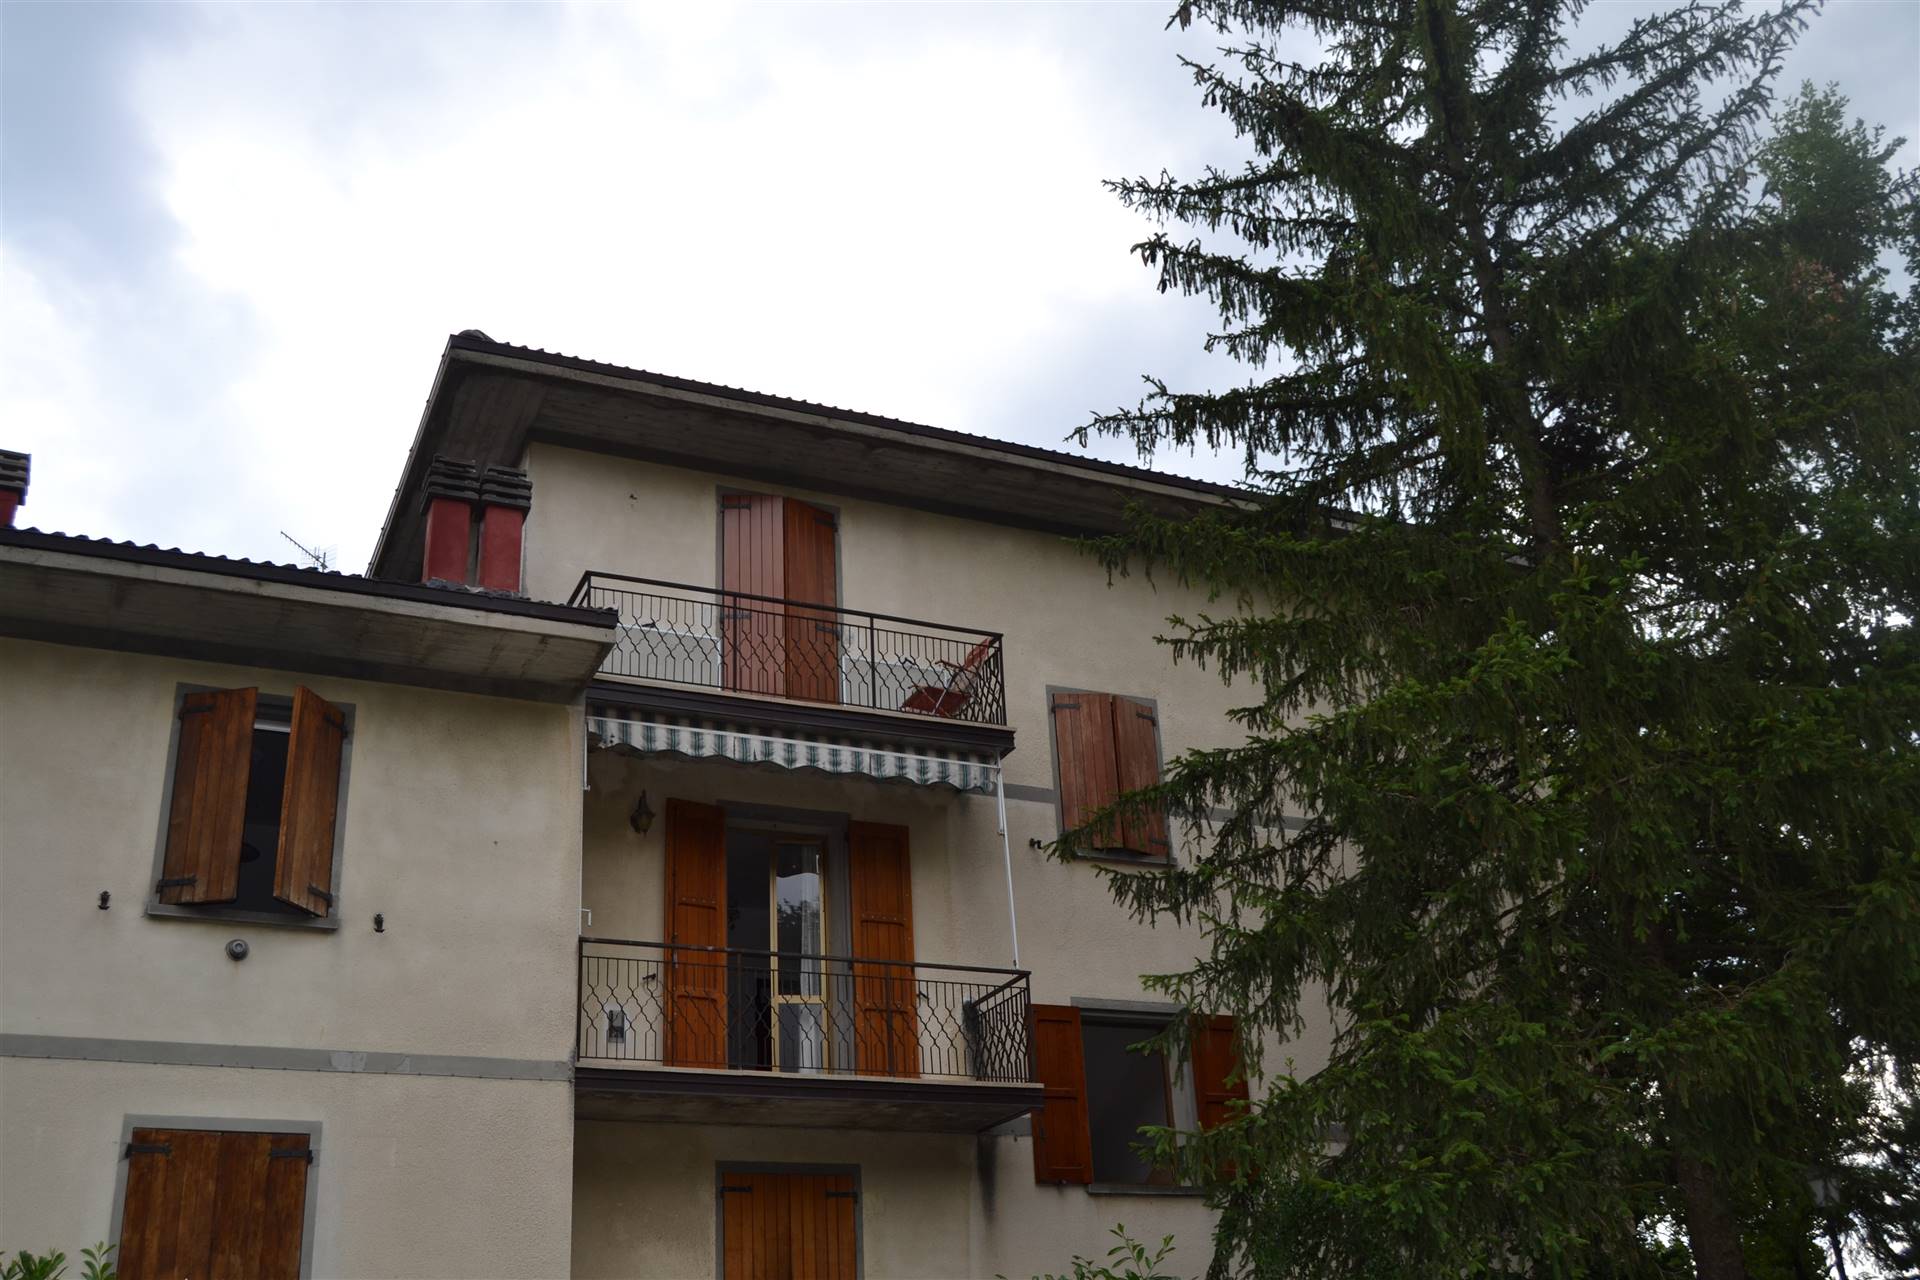 Appartamento in vendita a Grizzana Morandi, 2 locali, zona eacuto Ragazza, prezzo € 28.000 | PortaleAgenzieImmobiliari.it